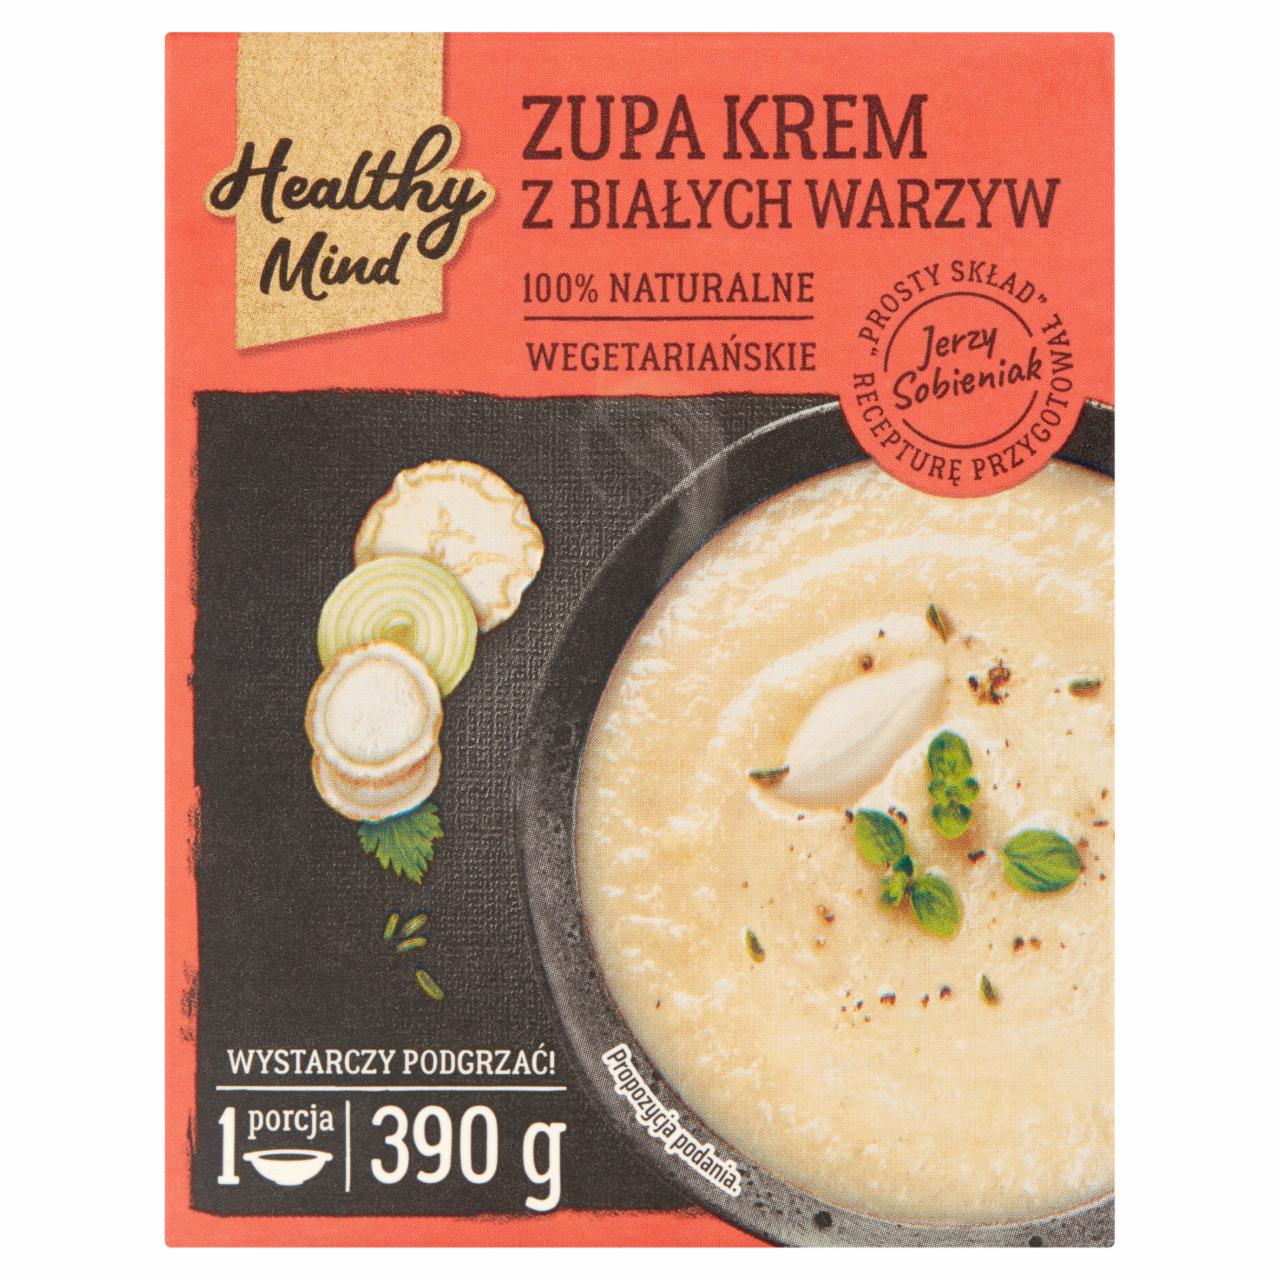 Zdjęcia - Healthy Mind Zupa krem z białych warzyw 390 g